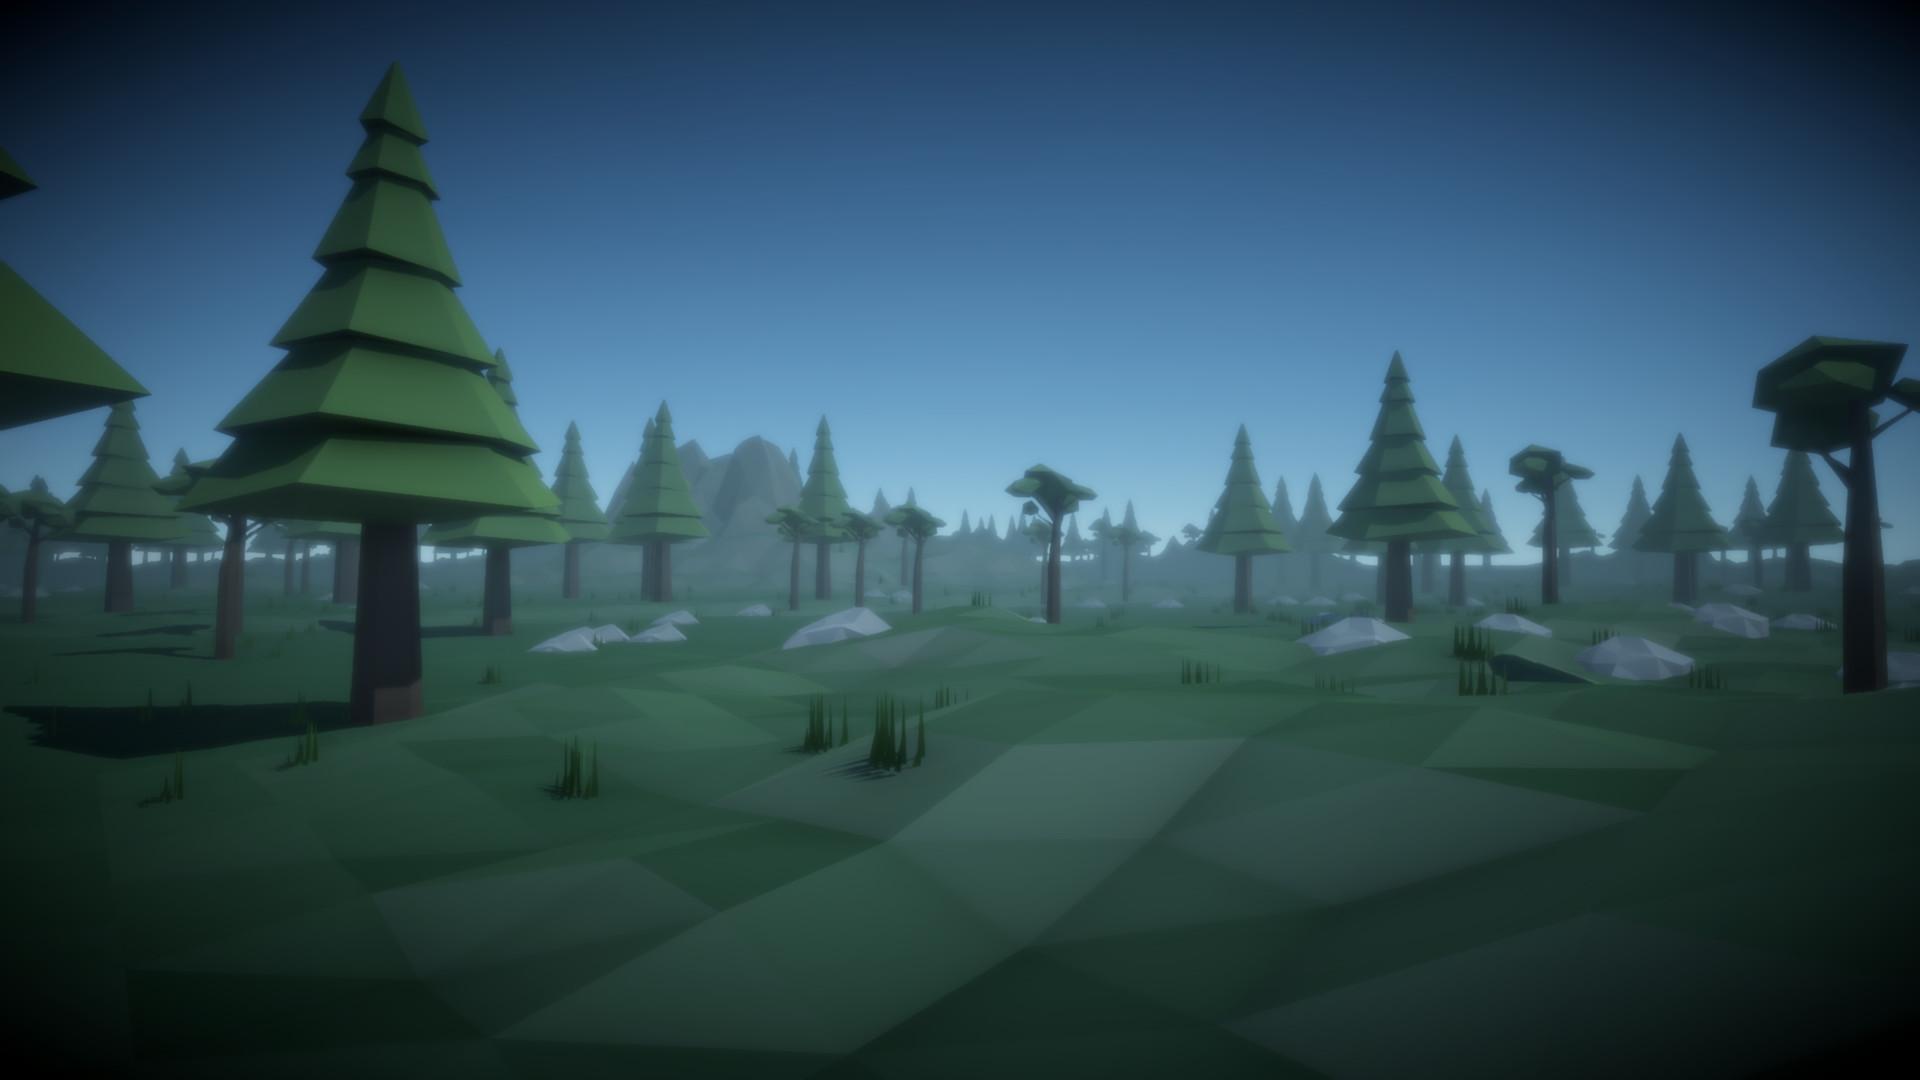 Screenshot №5 from game MiDZone